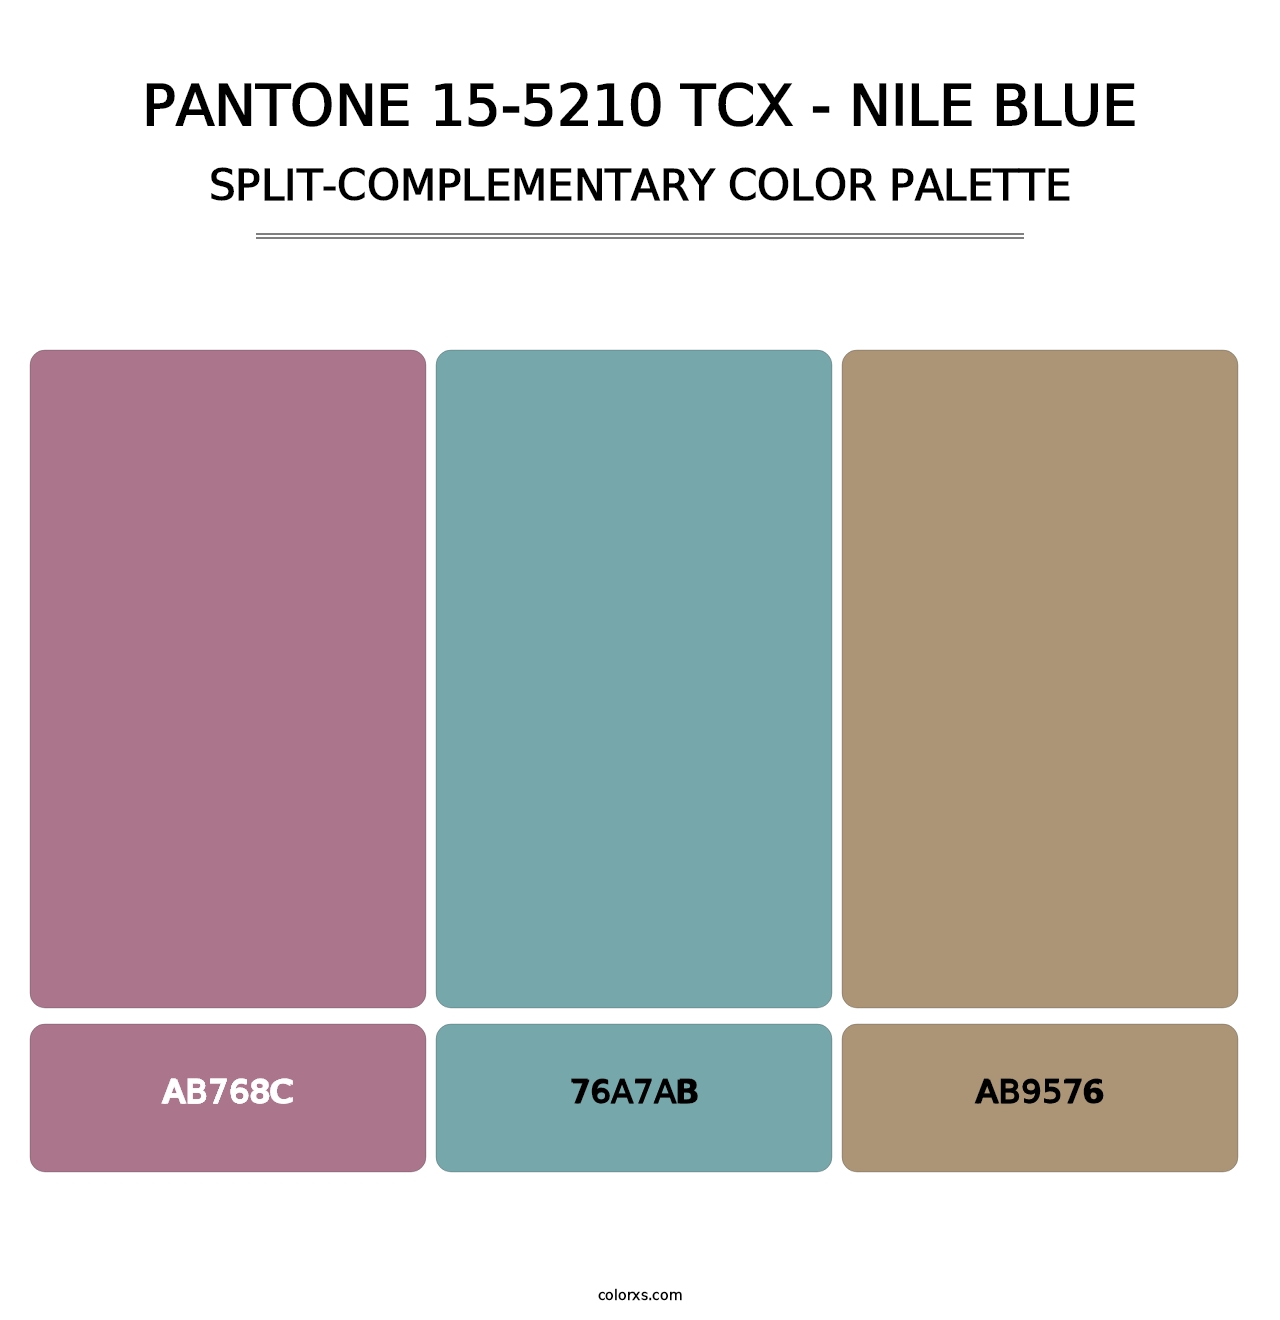 PANTONE 15-5210 TCX - Nile Blue - Split-Complementary Color Palette